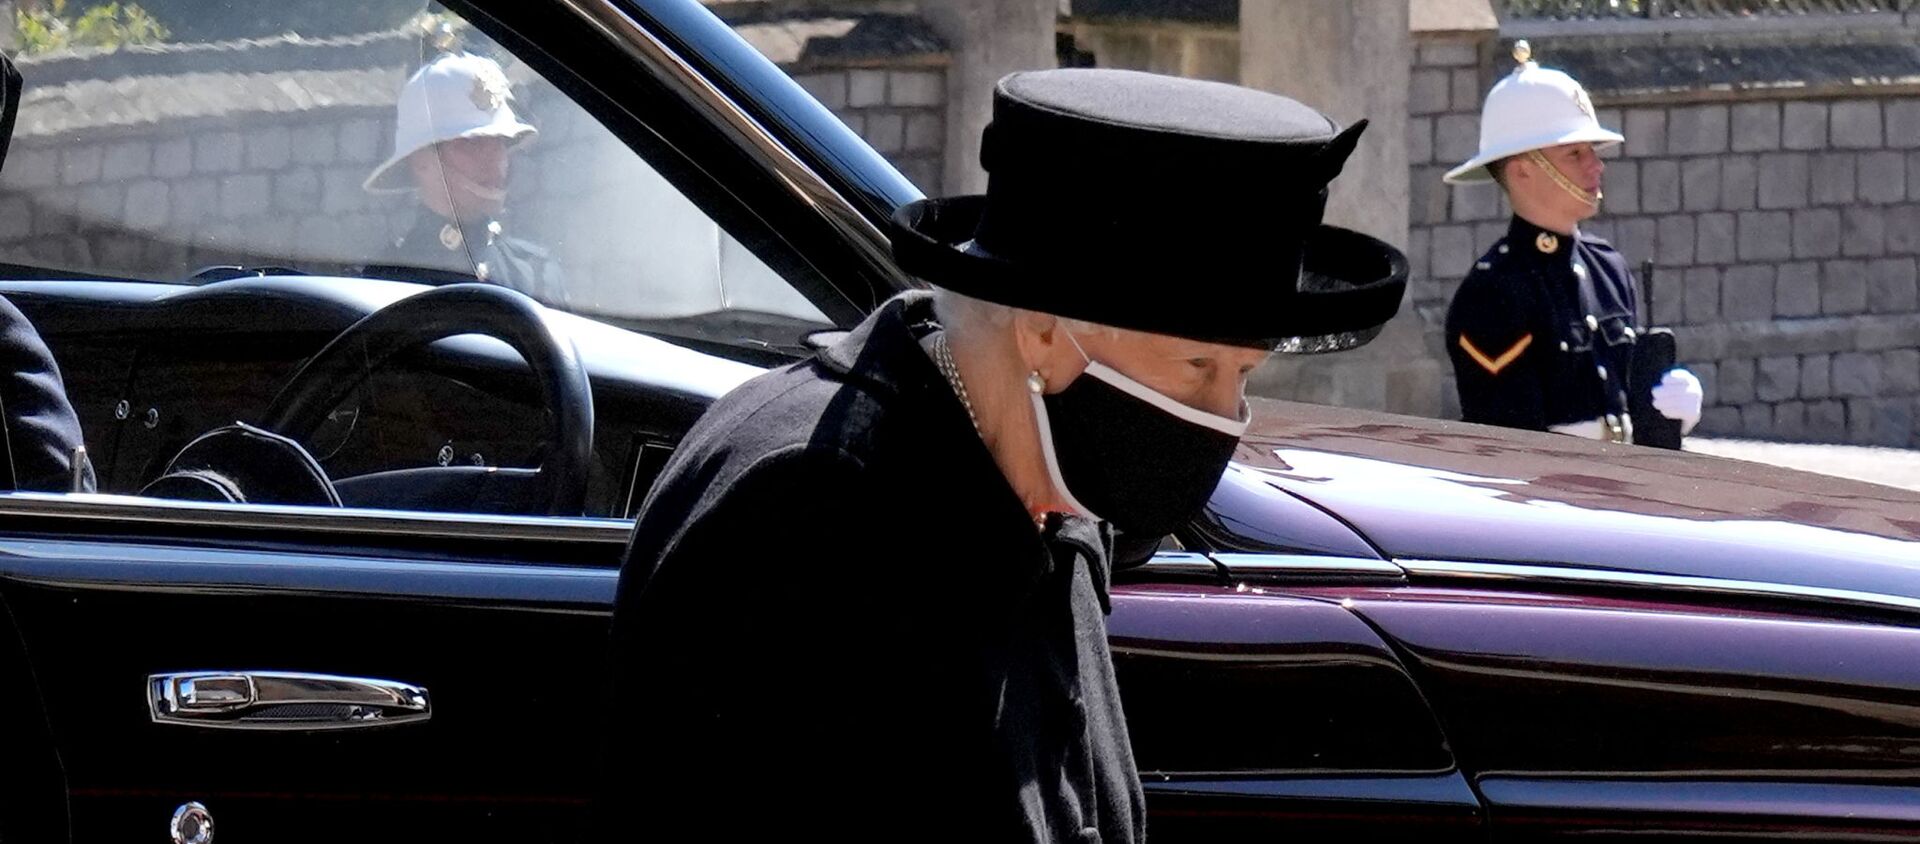 ملكة بريطانيا، إليزابيث الثانية في جنازة زوجها الأمير فيليب في قلعة وندسور، بريطانيا، 17 نيسان/ أبريل 2021 - سبوتنيك عربي, 1920, 19.04.2021